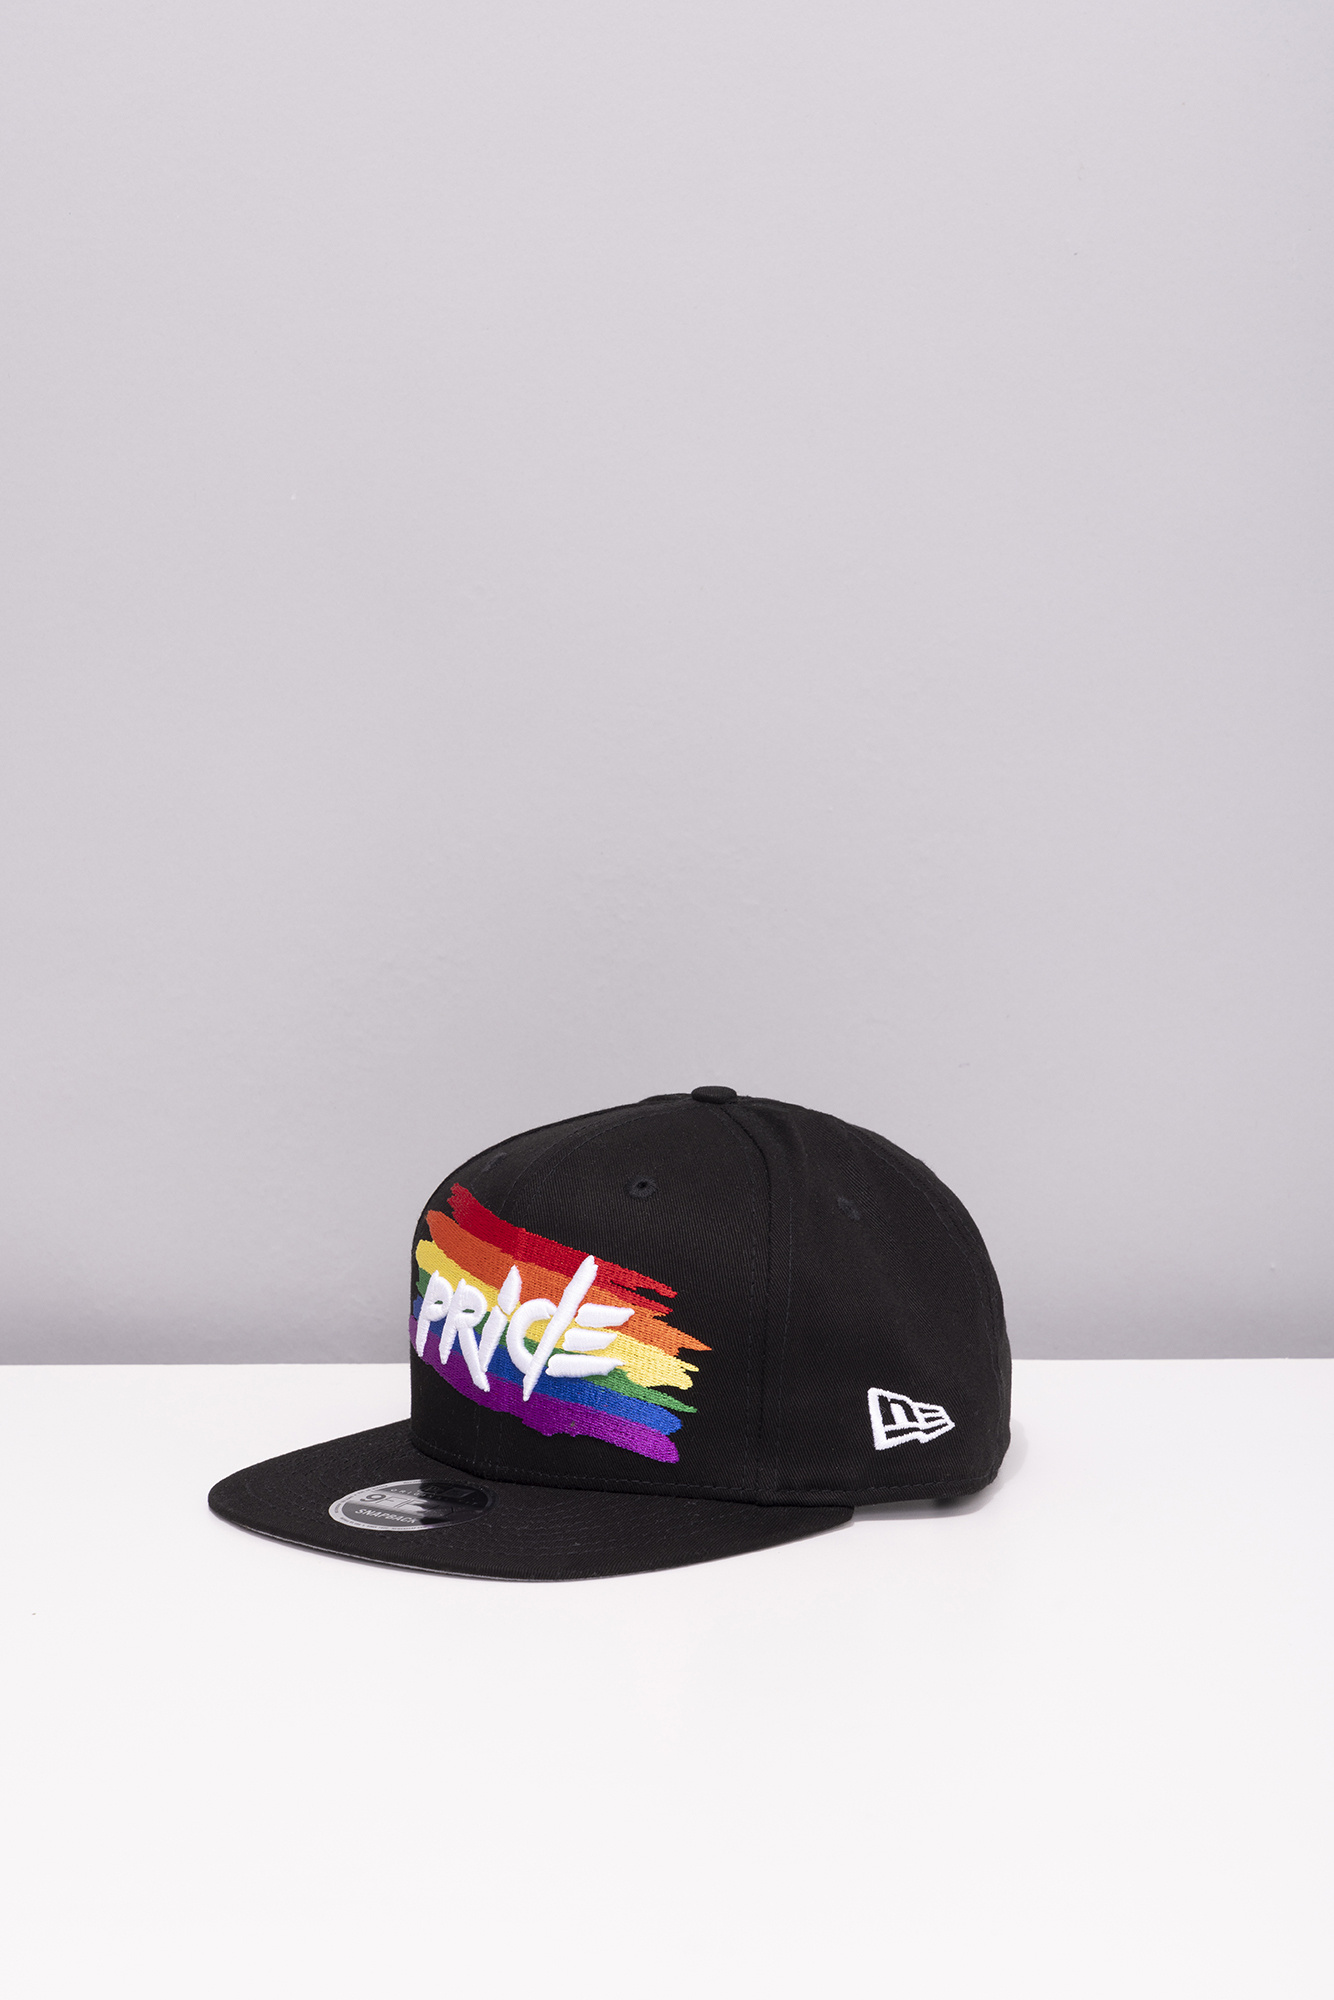 New Era 950 Pride Paint Cap